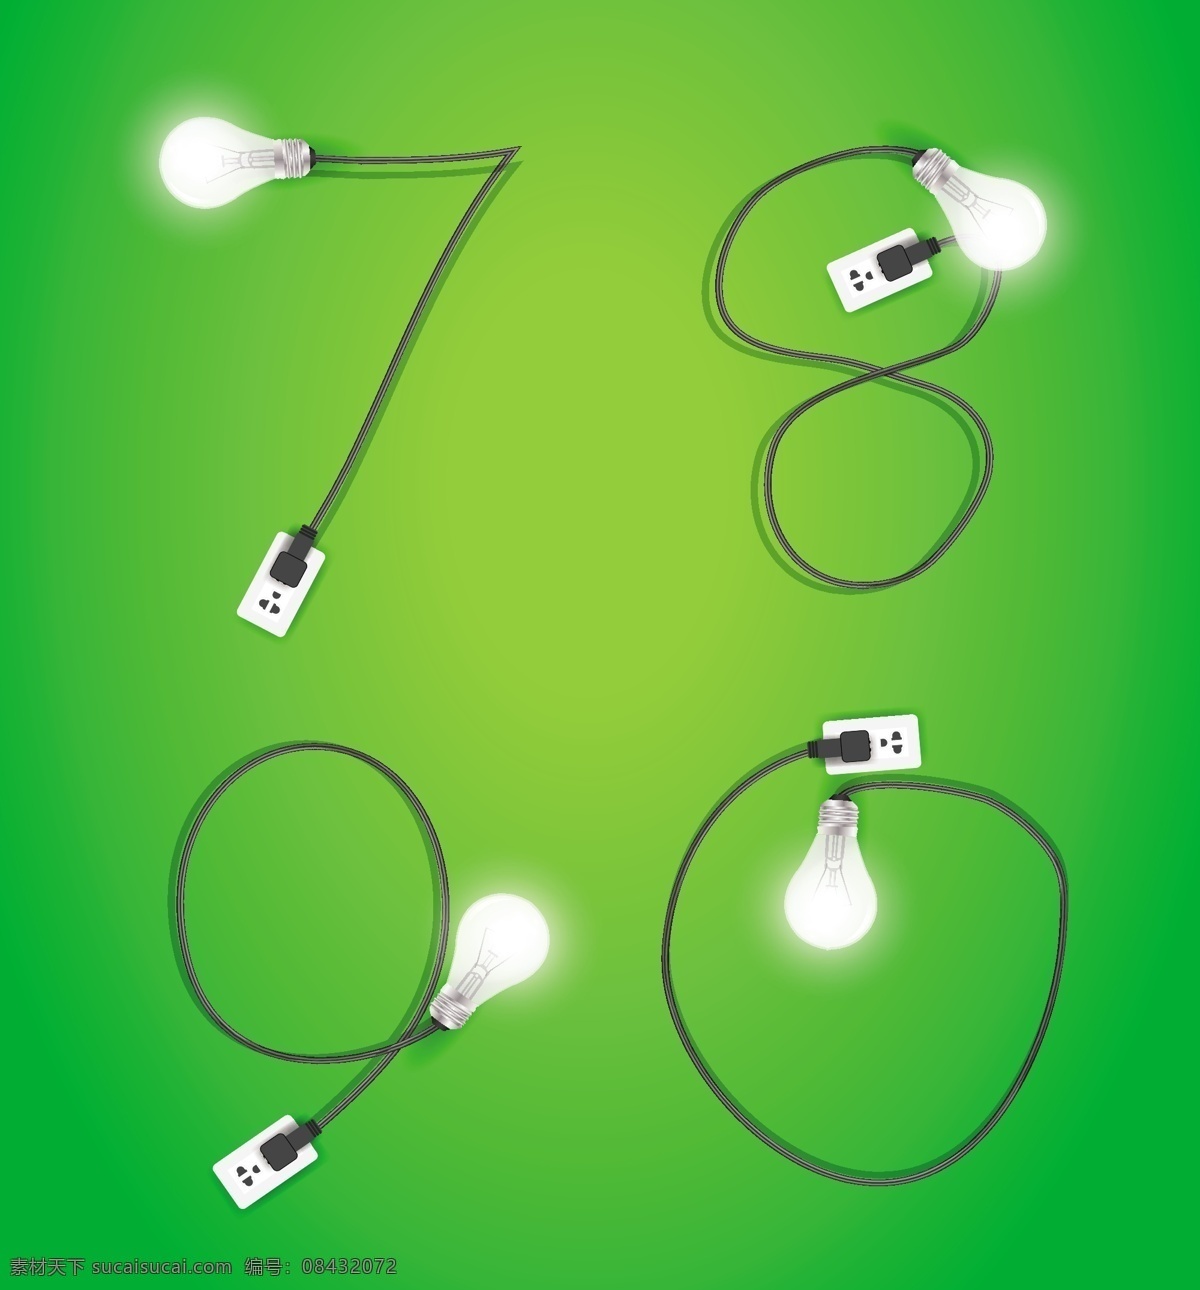 矢量 电线 灯泡 数字 模板下载 电灯 艺术字 字体设计 矢量字体 生活百科 矢量素材 绿色